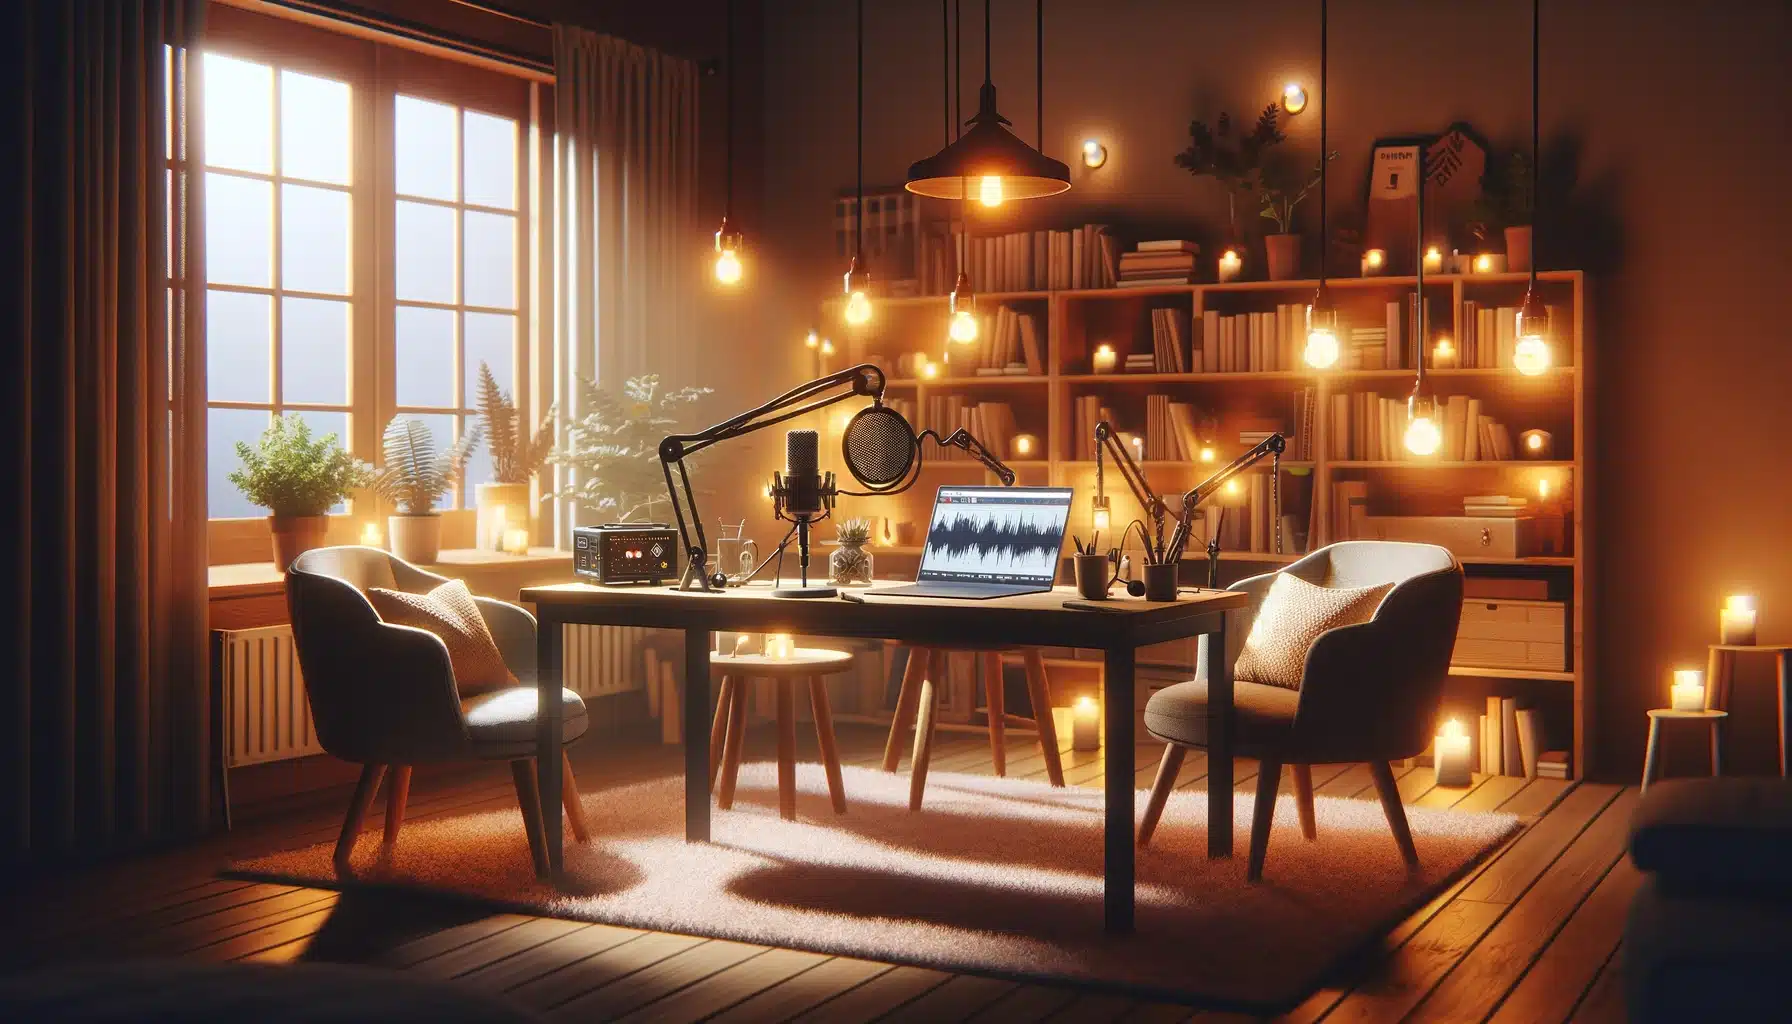 Gemütliches Podcast-Aufnahmestudio mit warmen Licht, bequemen Sesseln, einem Mikrofon auf einem Holztisch und einem Laptop mit Podcast-Bearbeitungssoftware.